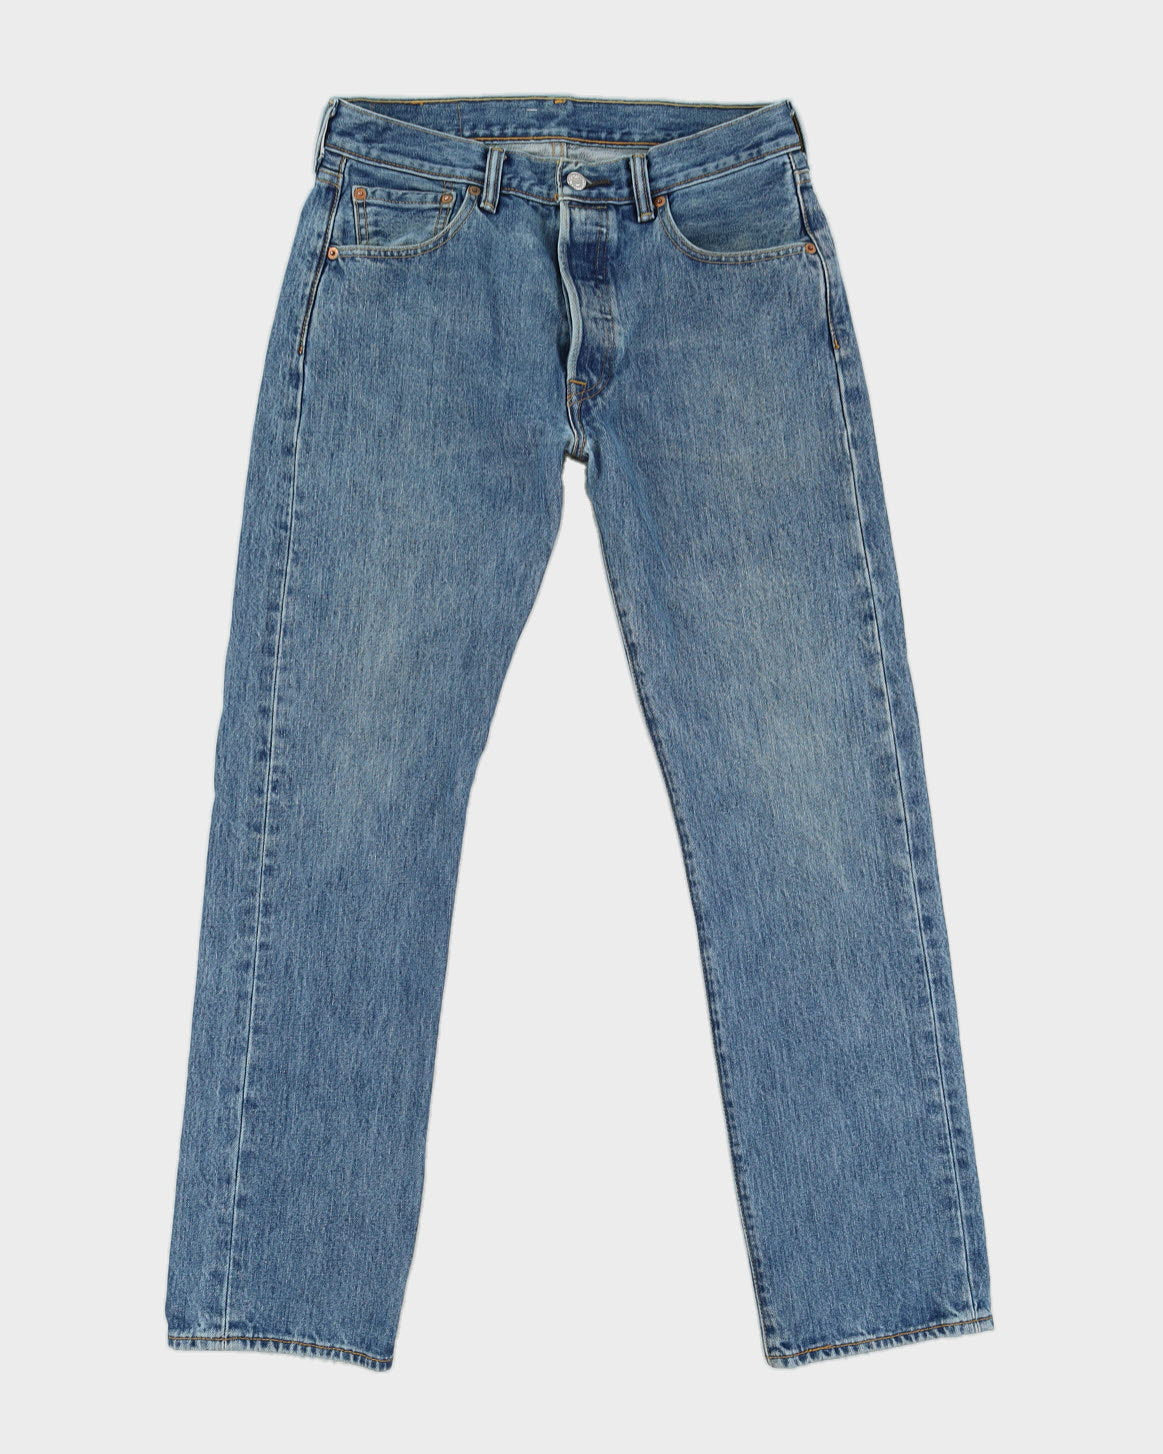 Levis 501  Blue Levi's Jeans - W 30 L 30